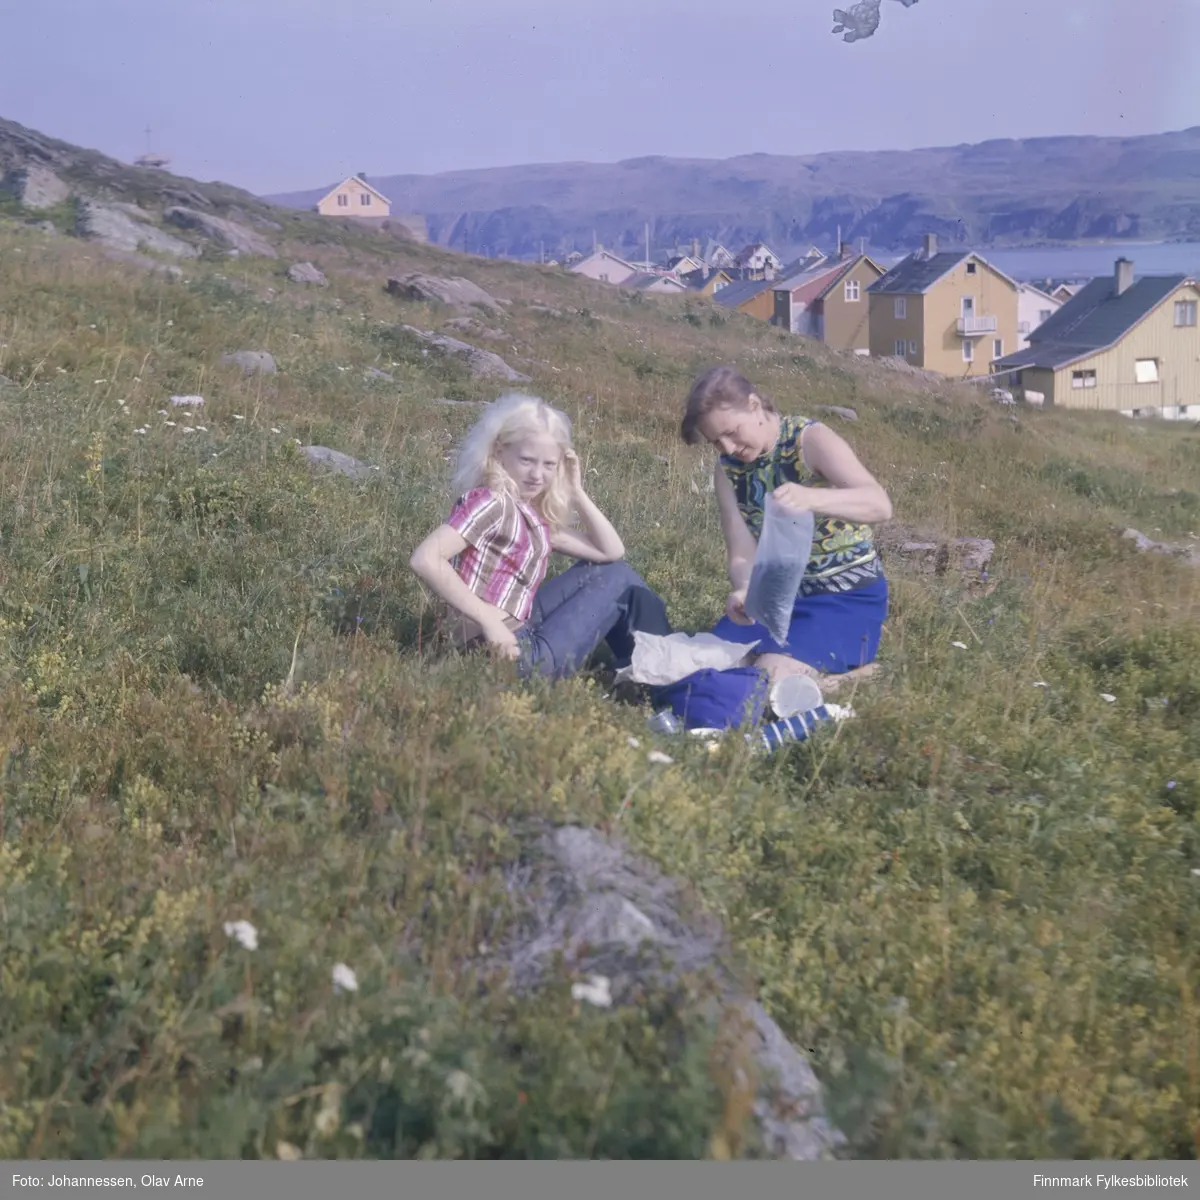 Foto av blåbærplukkere

Mor og datter, Borghild og Nora Sandberg

I bakgrunnen kan man se skolegata i Båtsfjord

Foto trolig tatt på 1960/70-tallet